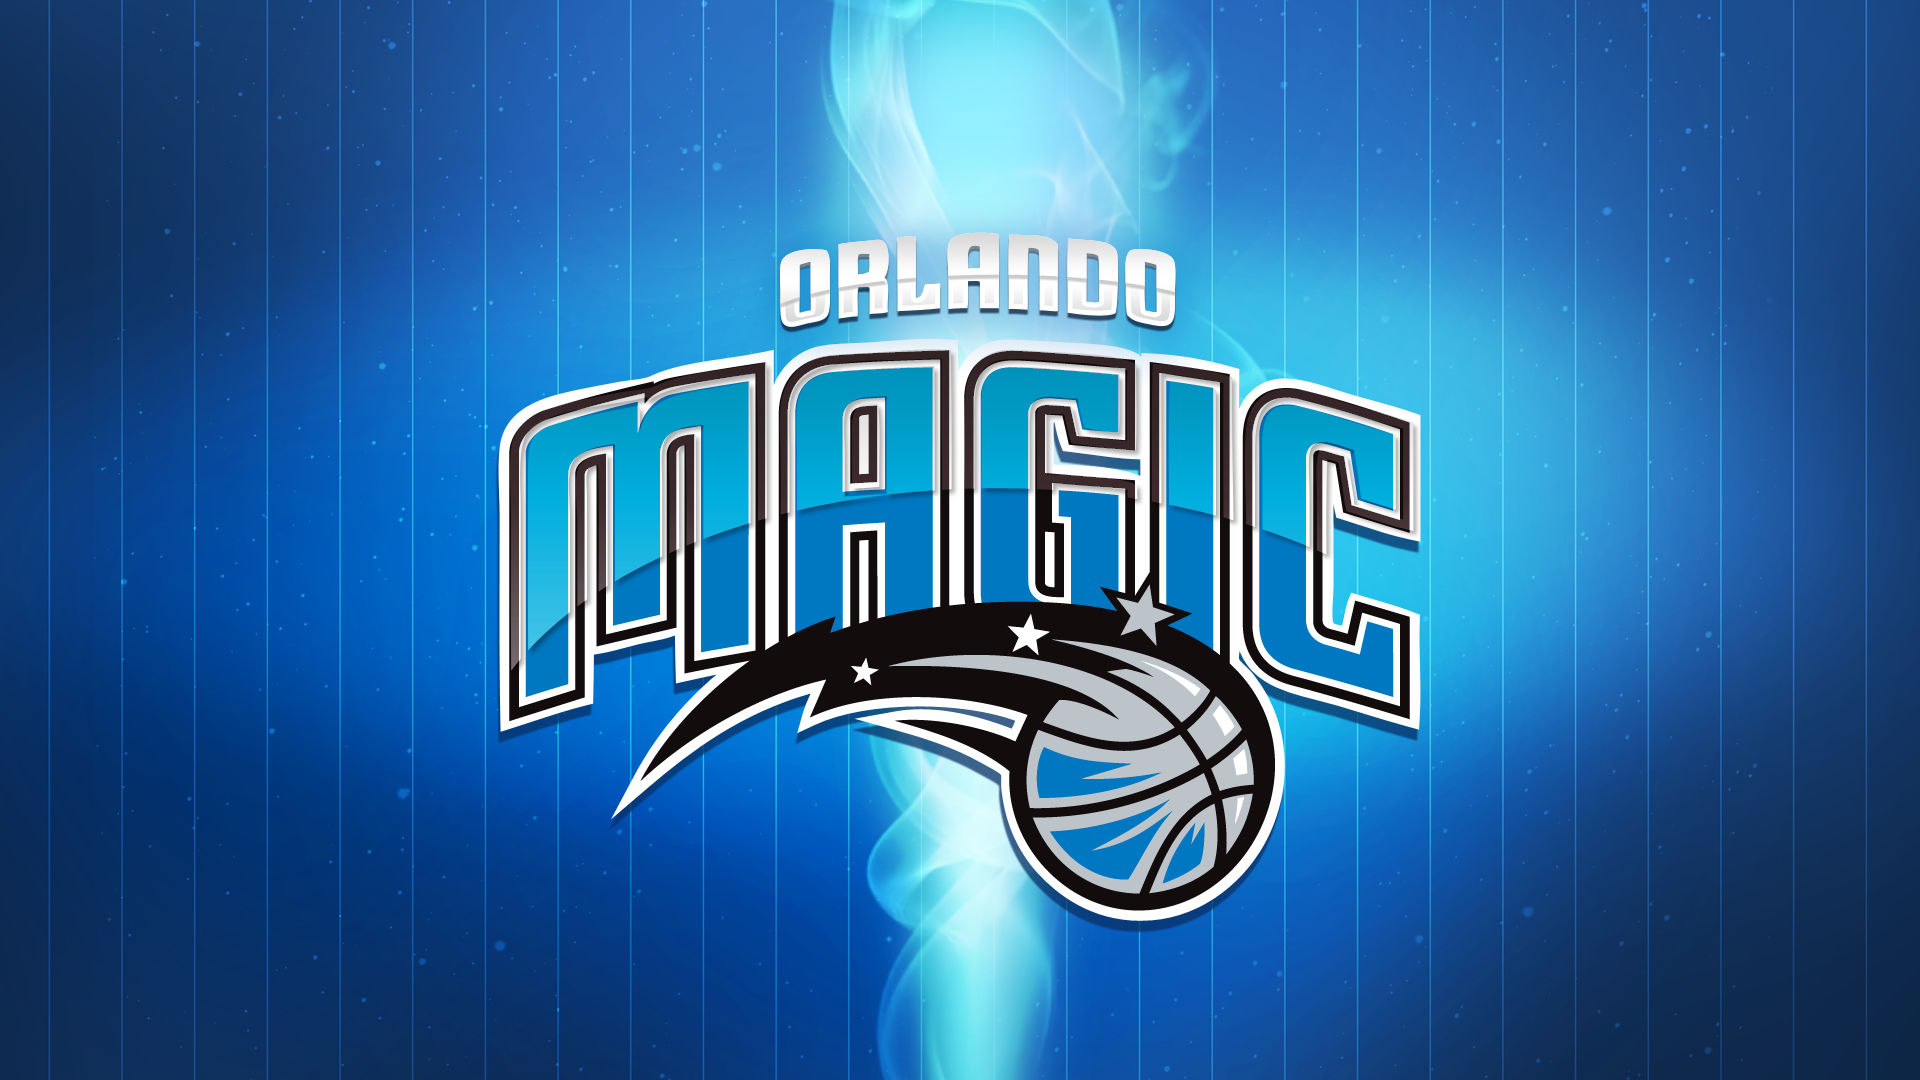 ORLANDO MAGIC nba basketball wallpaper 1920x1080